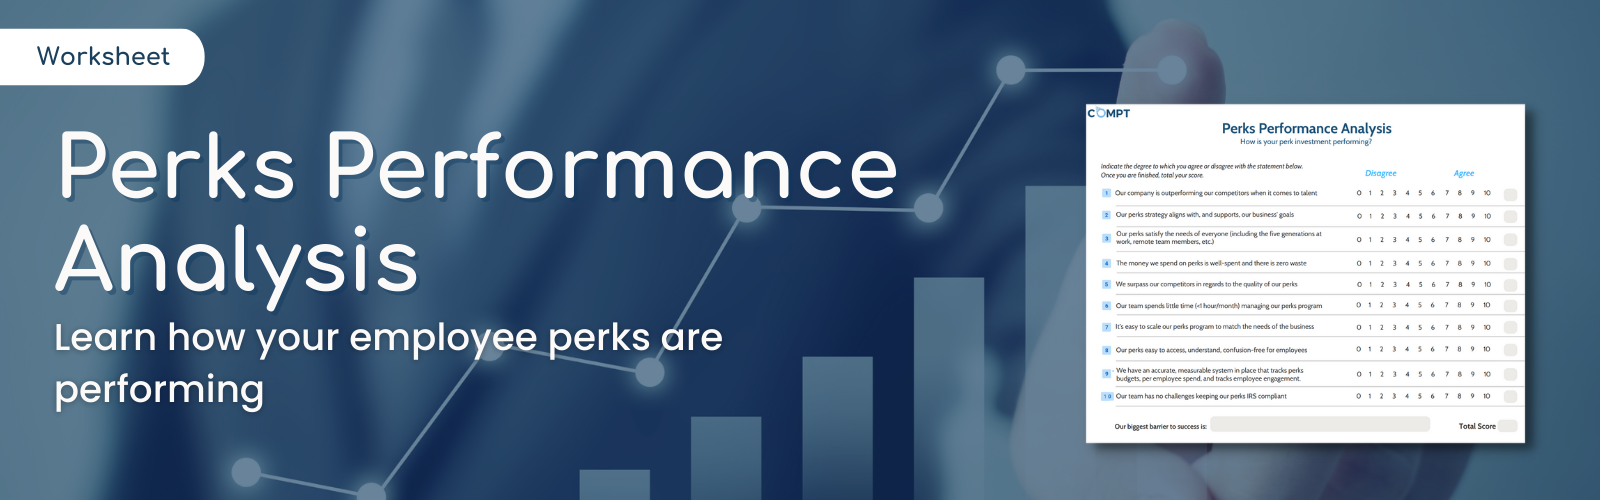 Perks Performance Analysis Worksheet LP